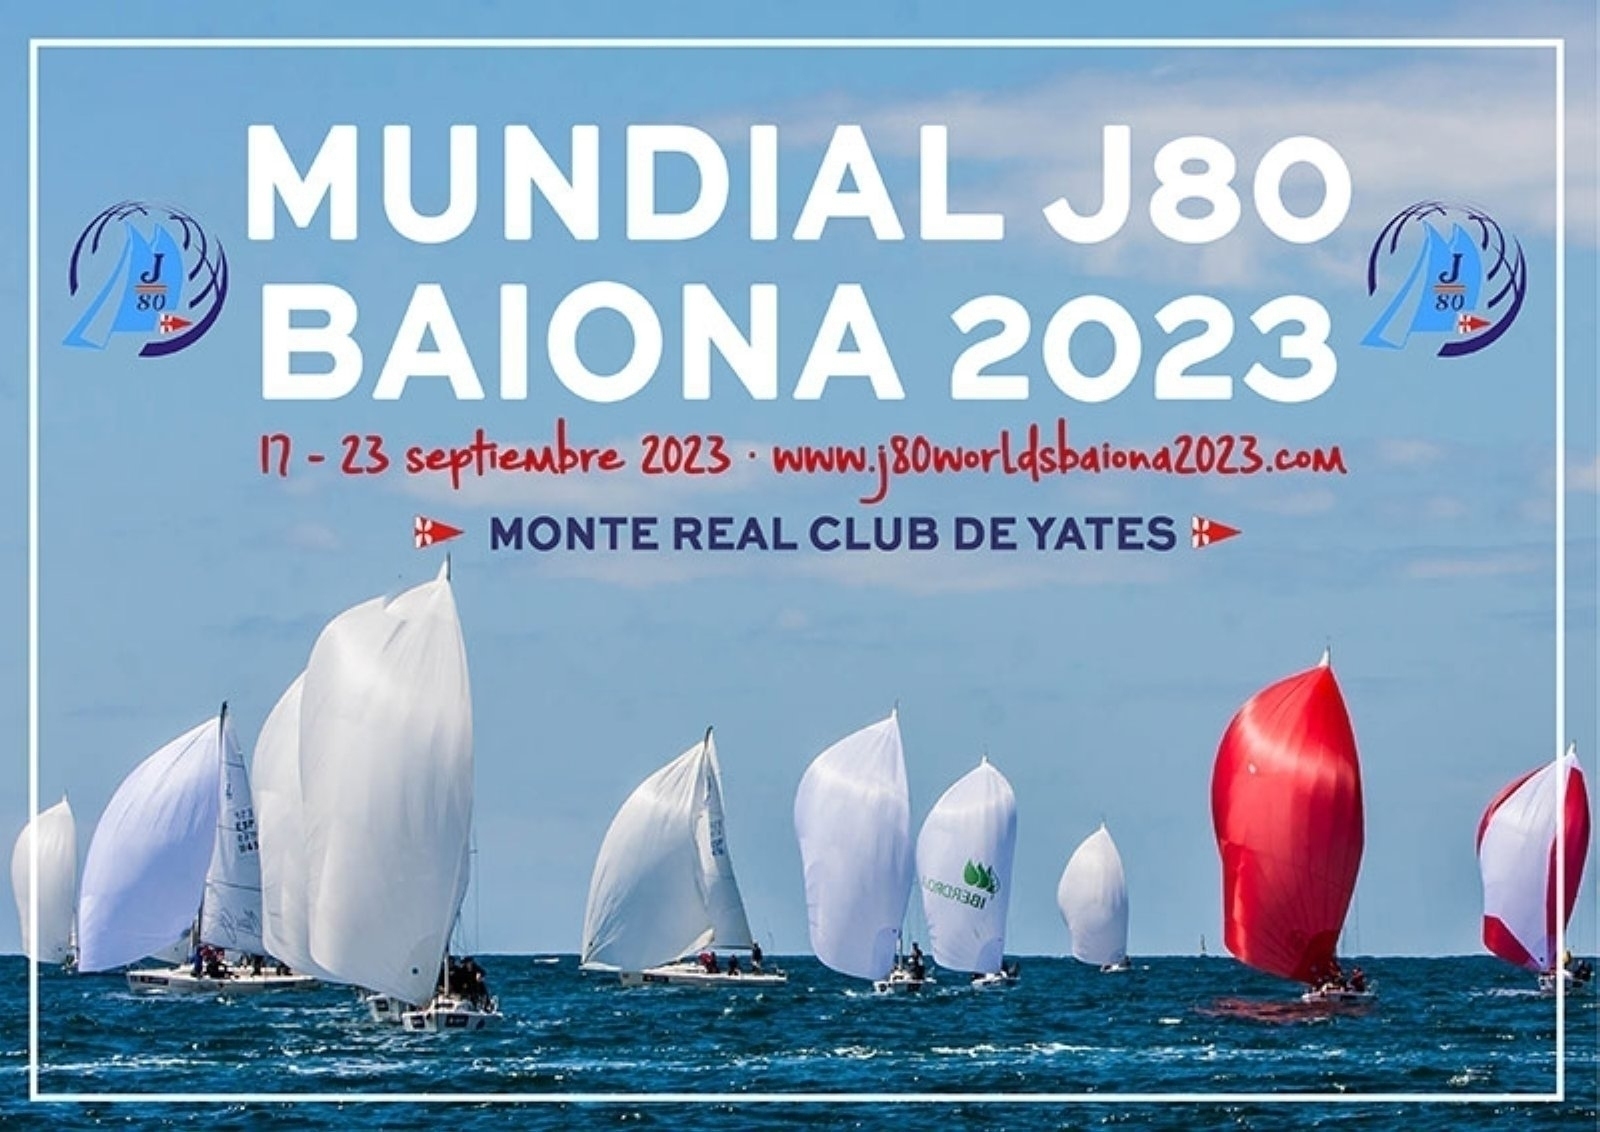 El Mundial de J80 Baiona 2023 en septiembre